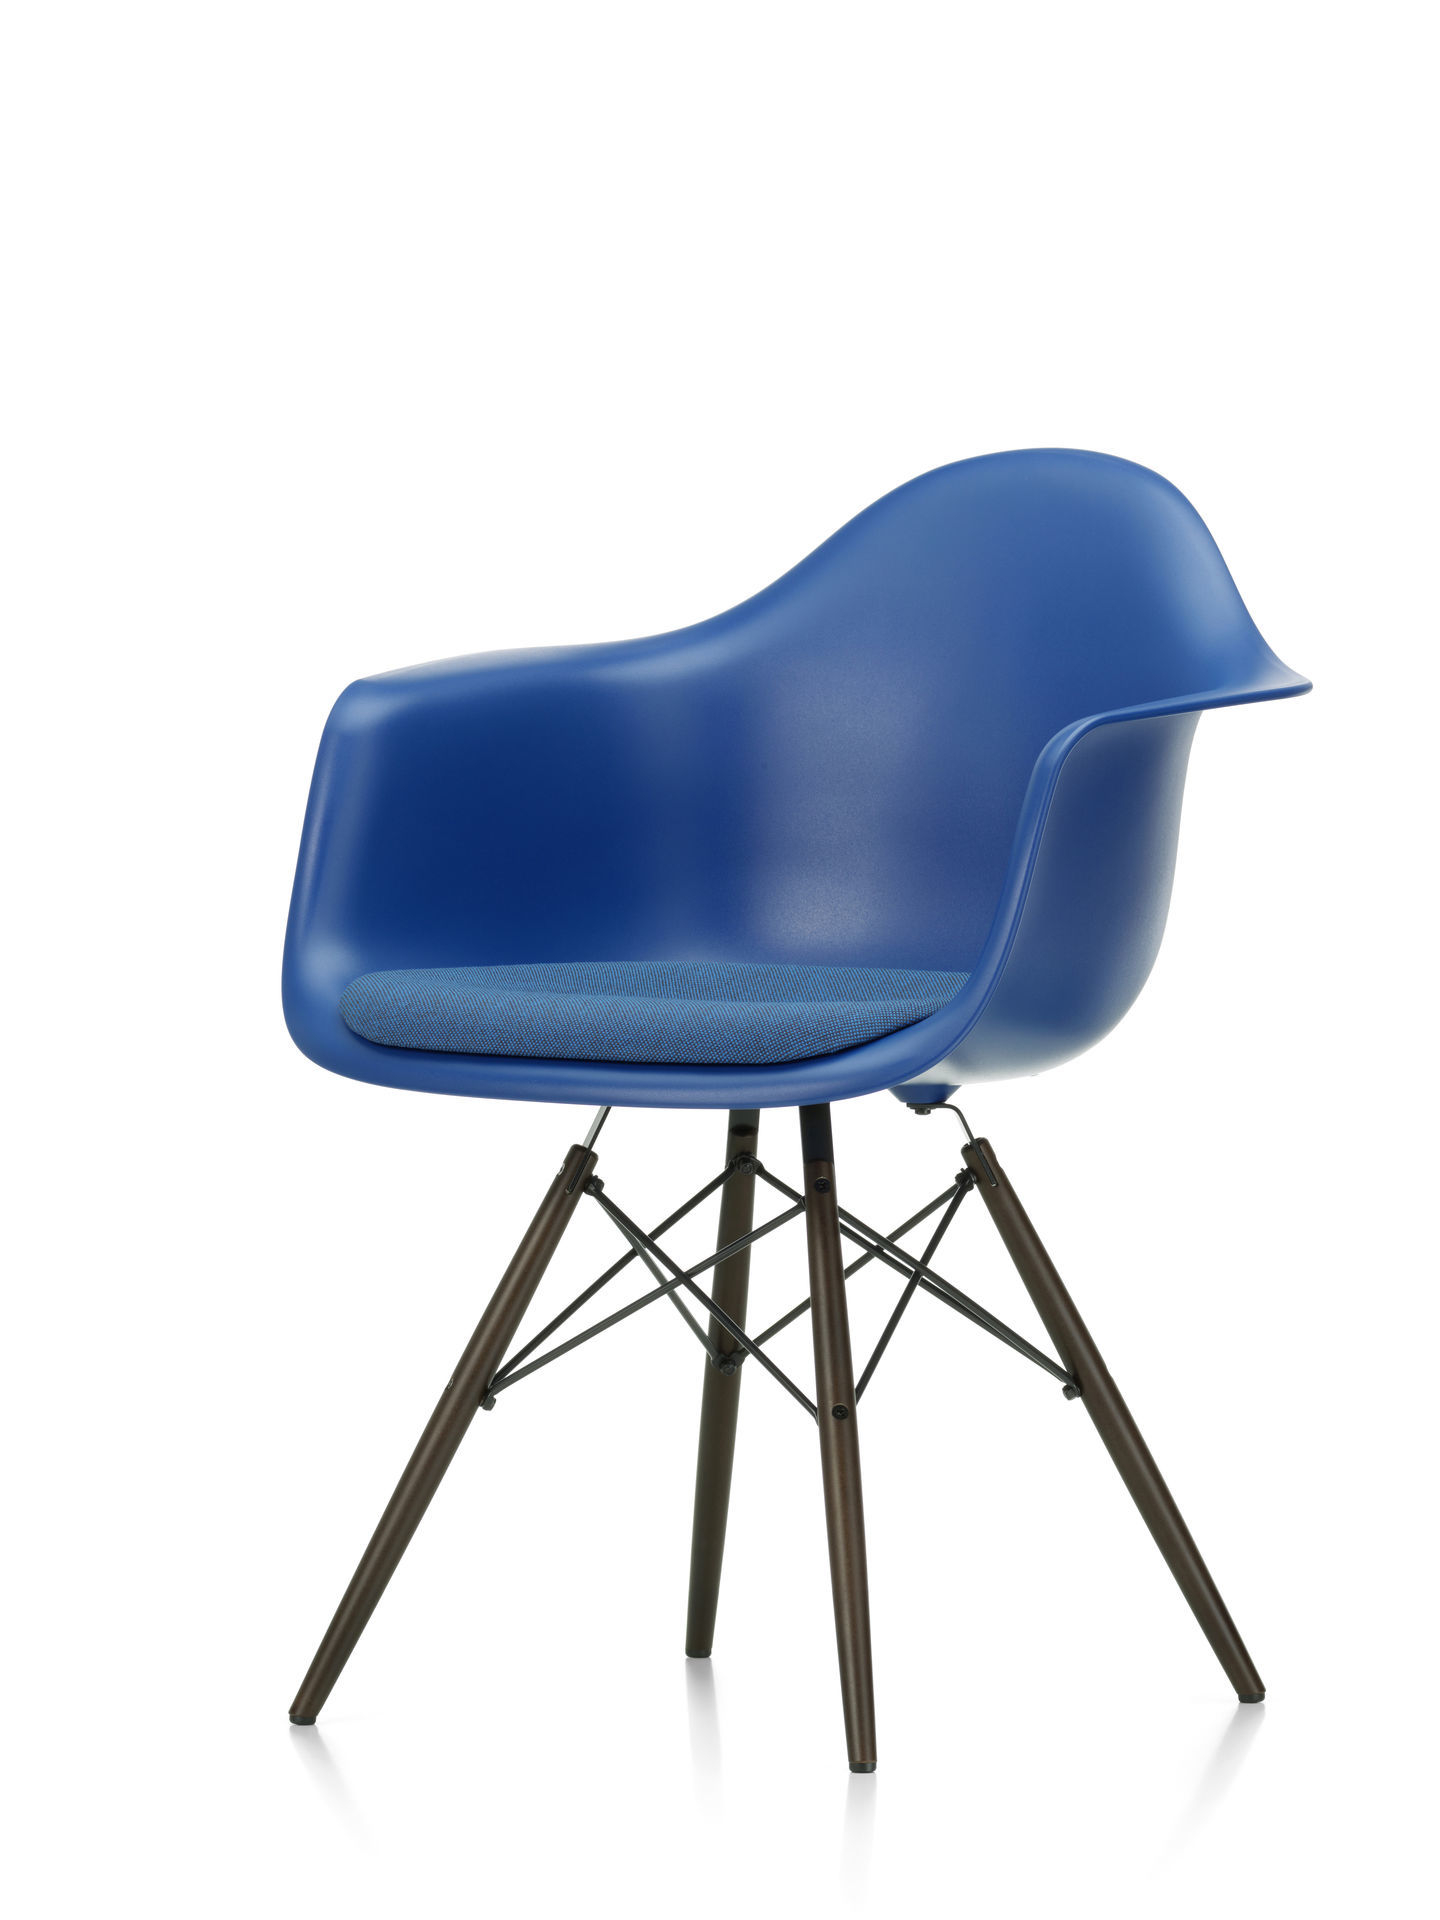 Eames Plastic Arm Chair DAW Chair with Seat cushion Vitra